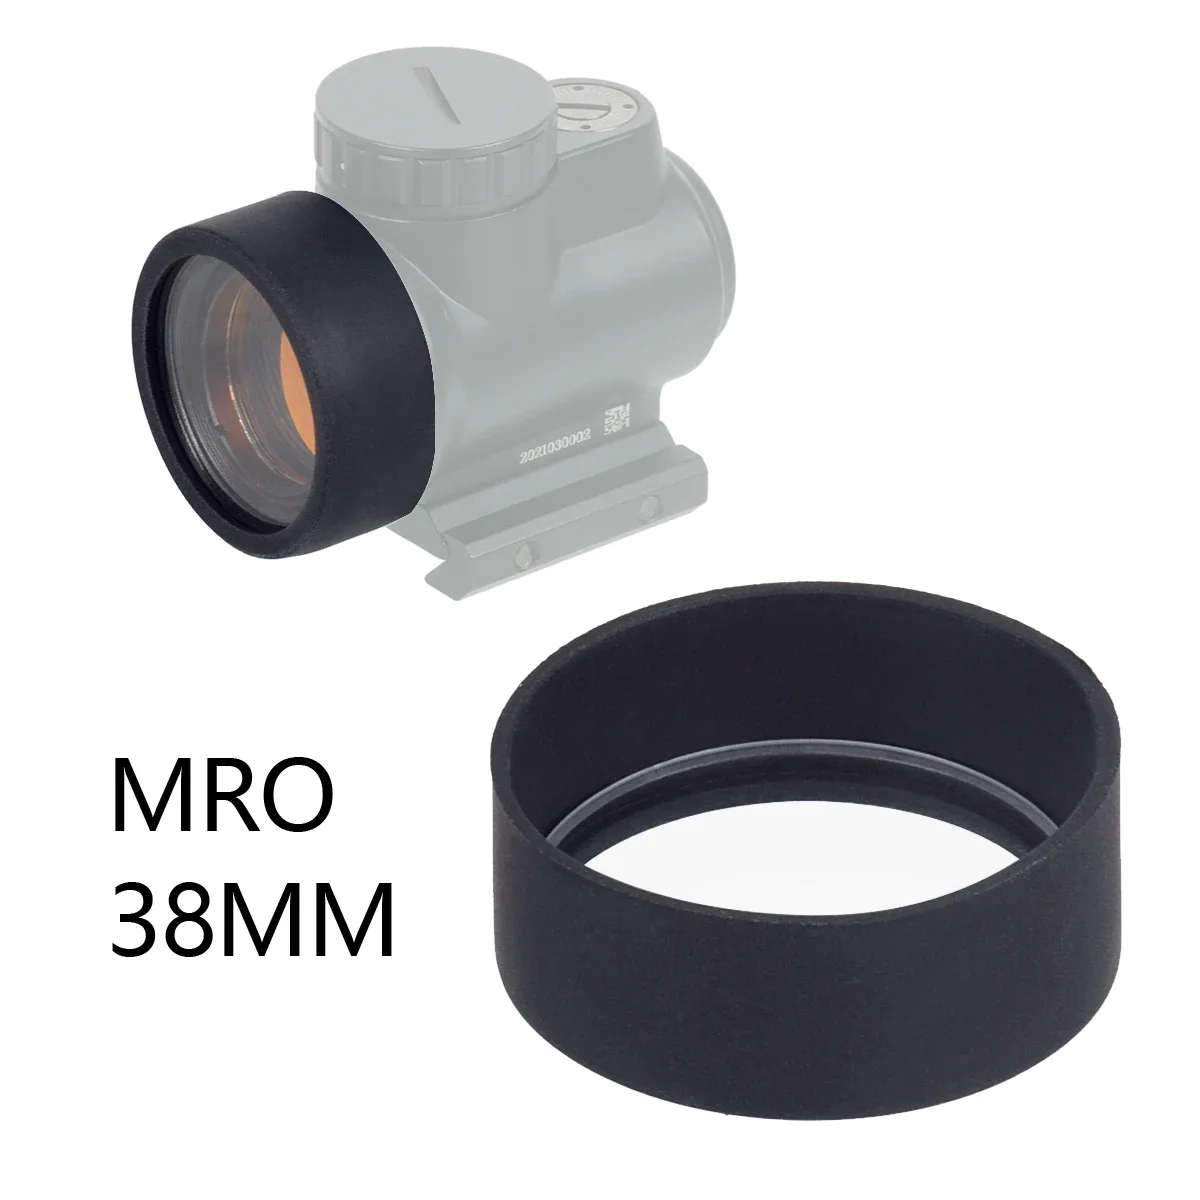 Тактическая резиновая крышка для объектива Trijicon SRO MRO Red Dot Sight, защитная крышка для SureFire M300 M600 X300 X400, оружия